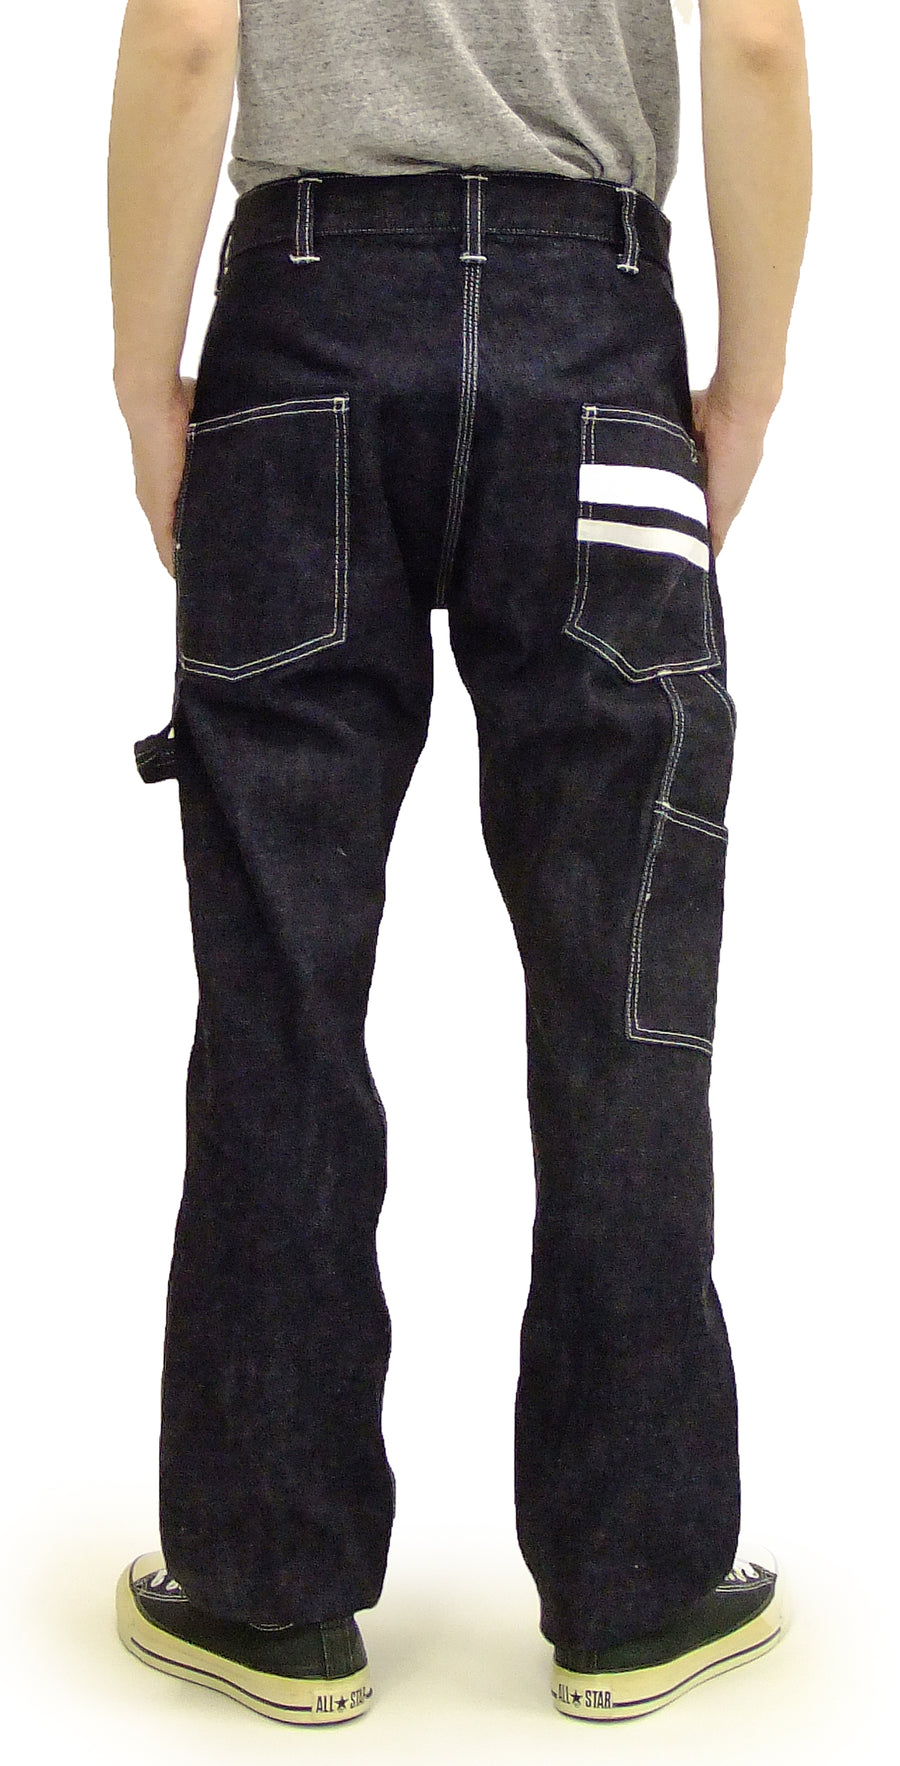 Momotaro Jeans Carpenter Jeans Men S 15 7 Oz Japanese Denim Work Pant Rodeo Japan Pine Avenue Clothes Shop